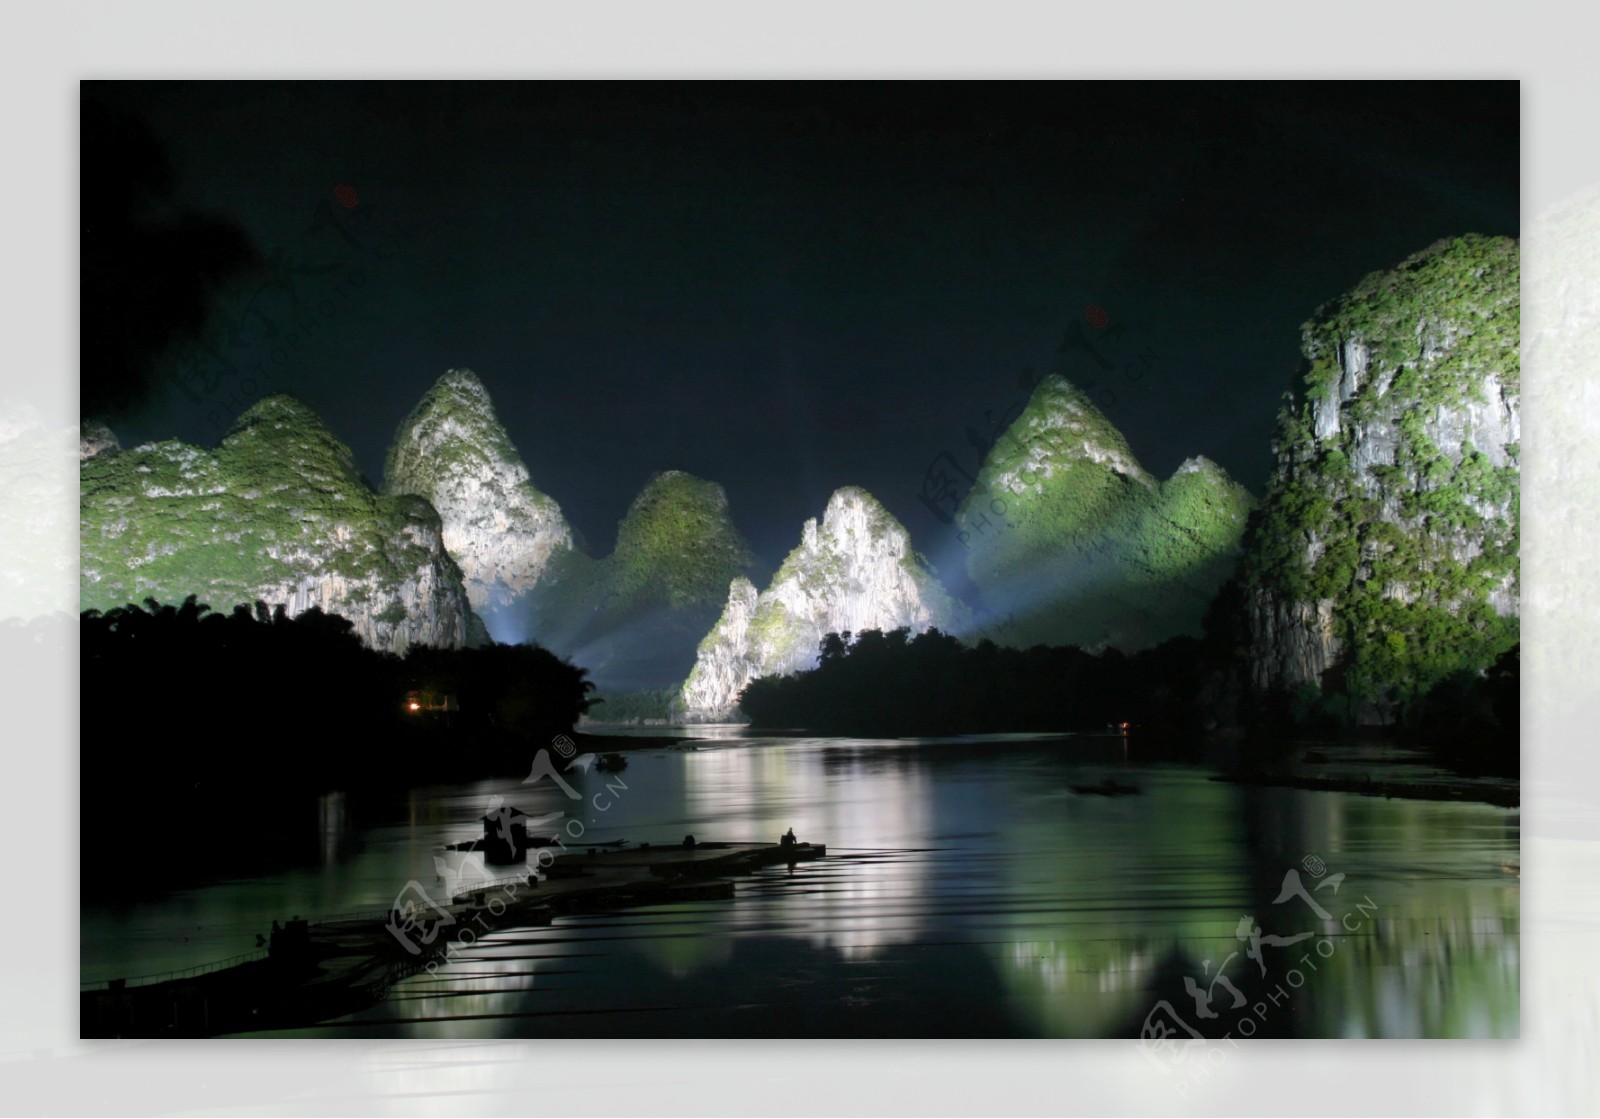 美丽的桂林山水夜景图片